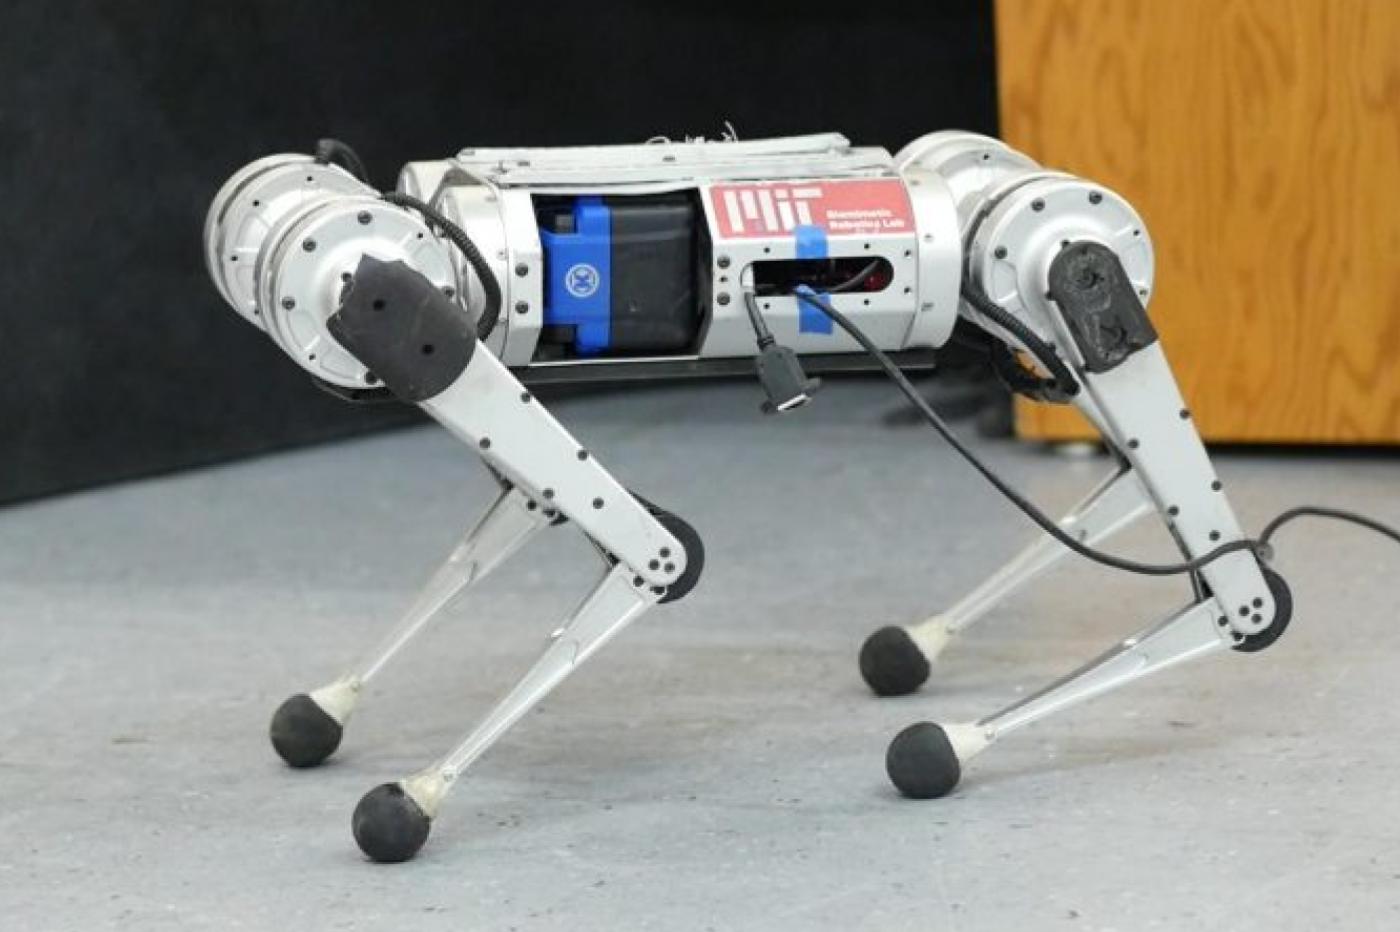 Le robot-guépard pataud du MIT a appris à sprinter tout seul grâce à l’IA